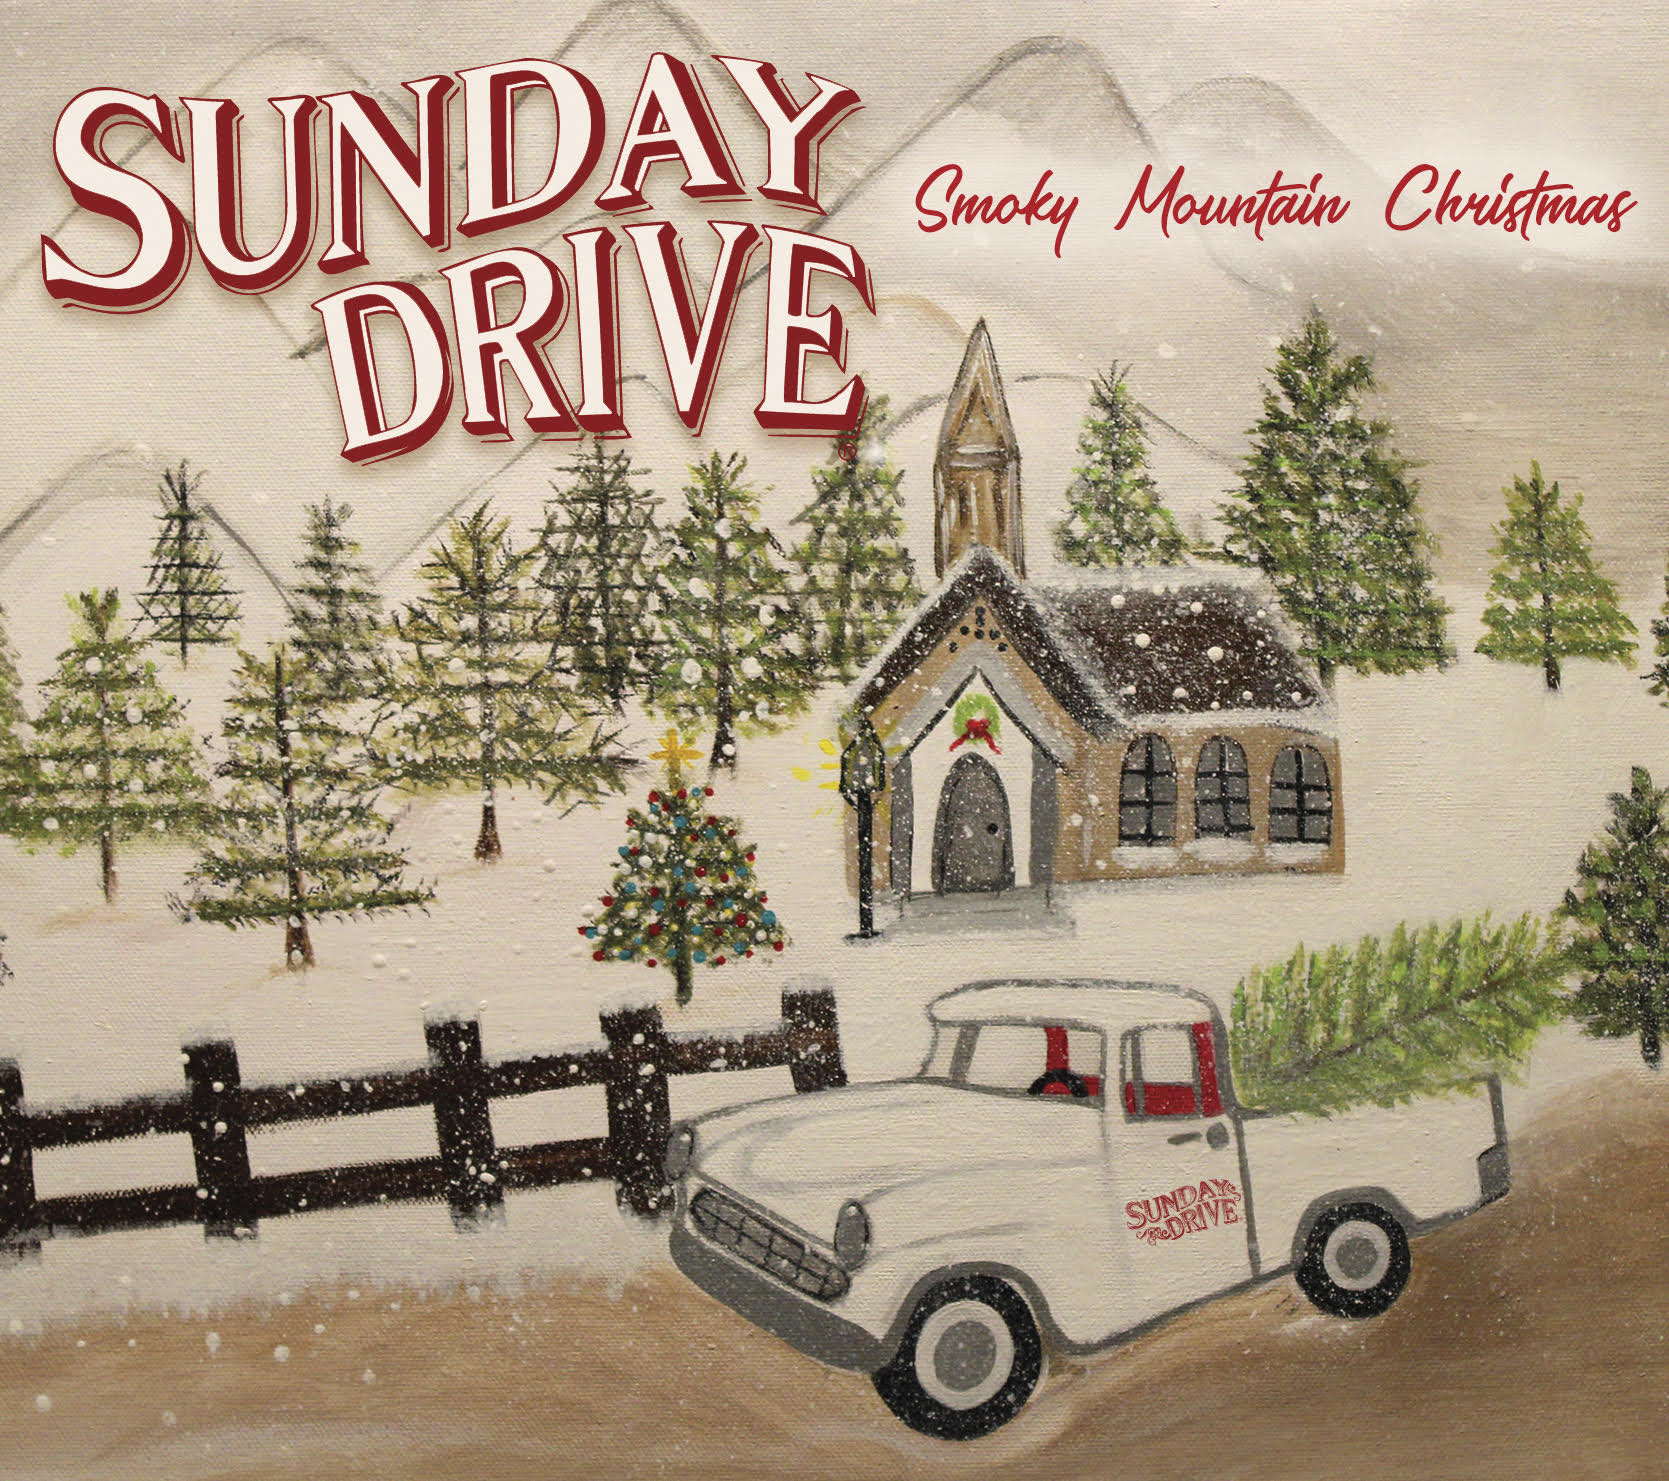 Smoky Mountain Christmas: CD - SUNDAY DRIVE